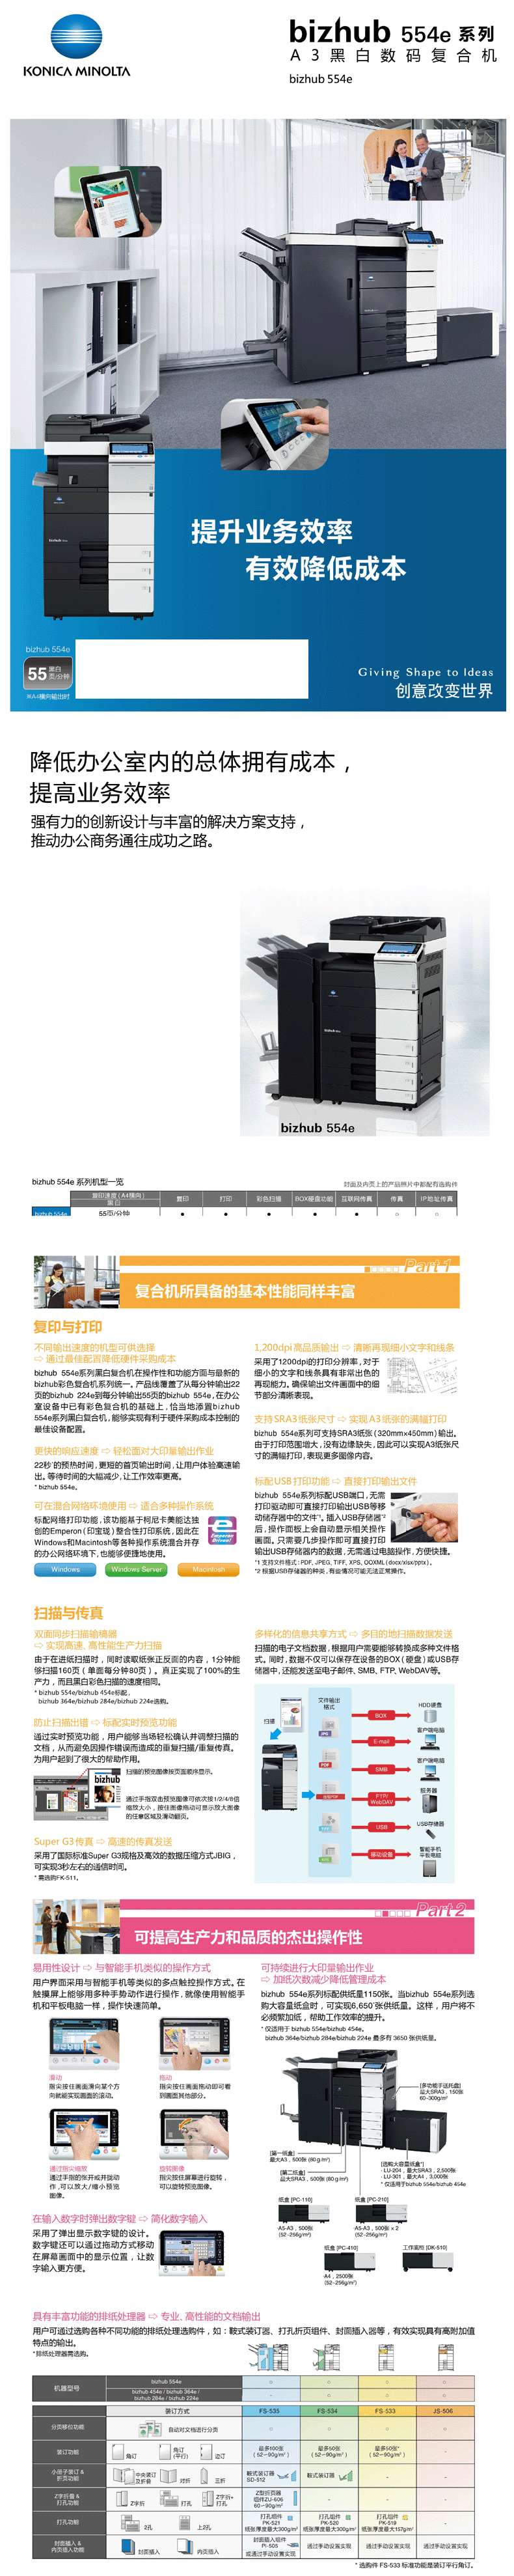 柯尼卡美能达 bizhub 554e A3 黑白多功能复合机 彩色互联网传真 标配双面输稿器 2纸盒 手送托盘